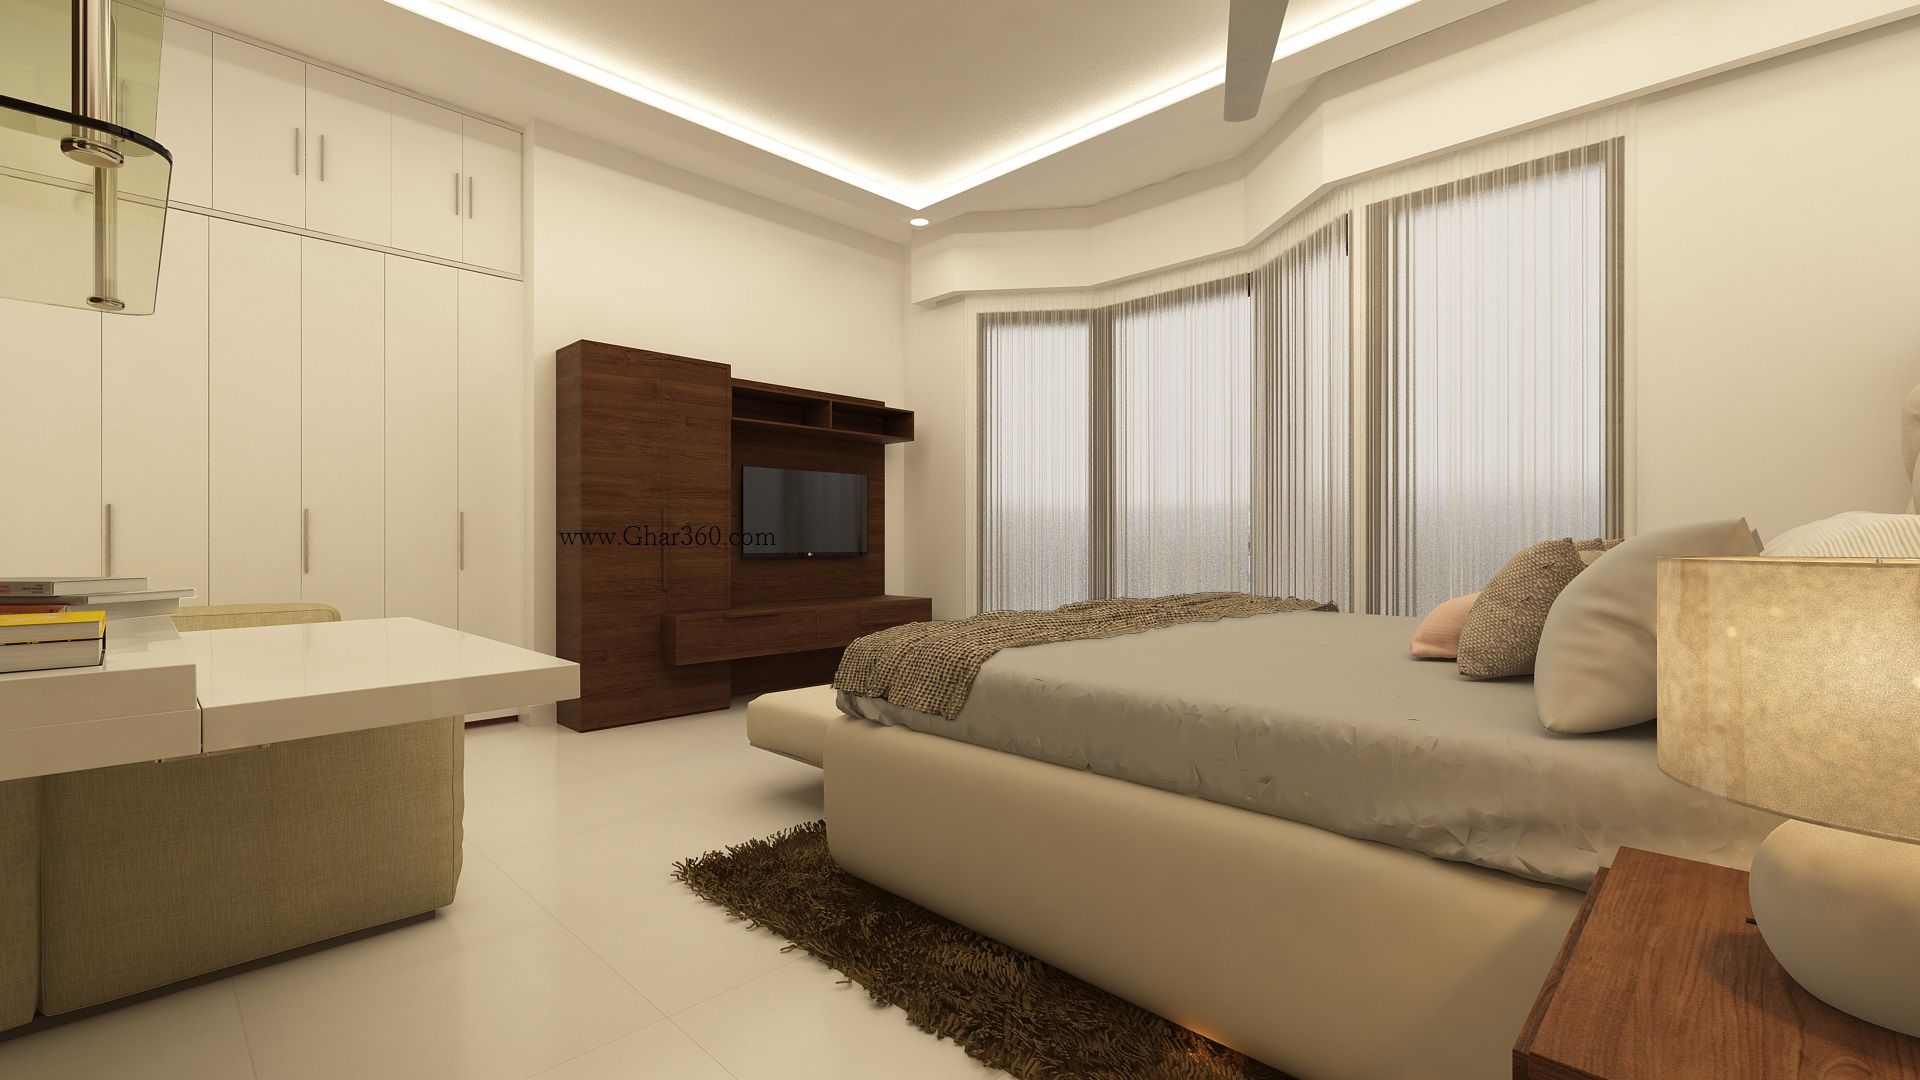 Master Bedroom TV Unit Ghar360